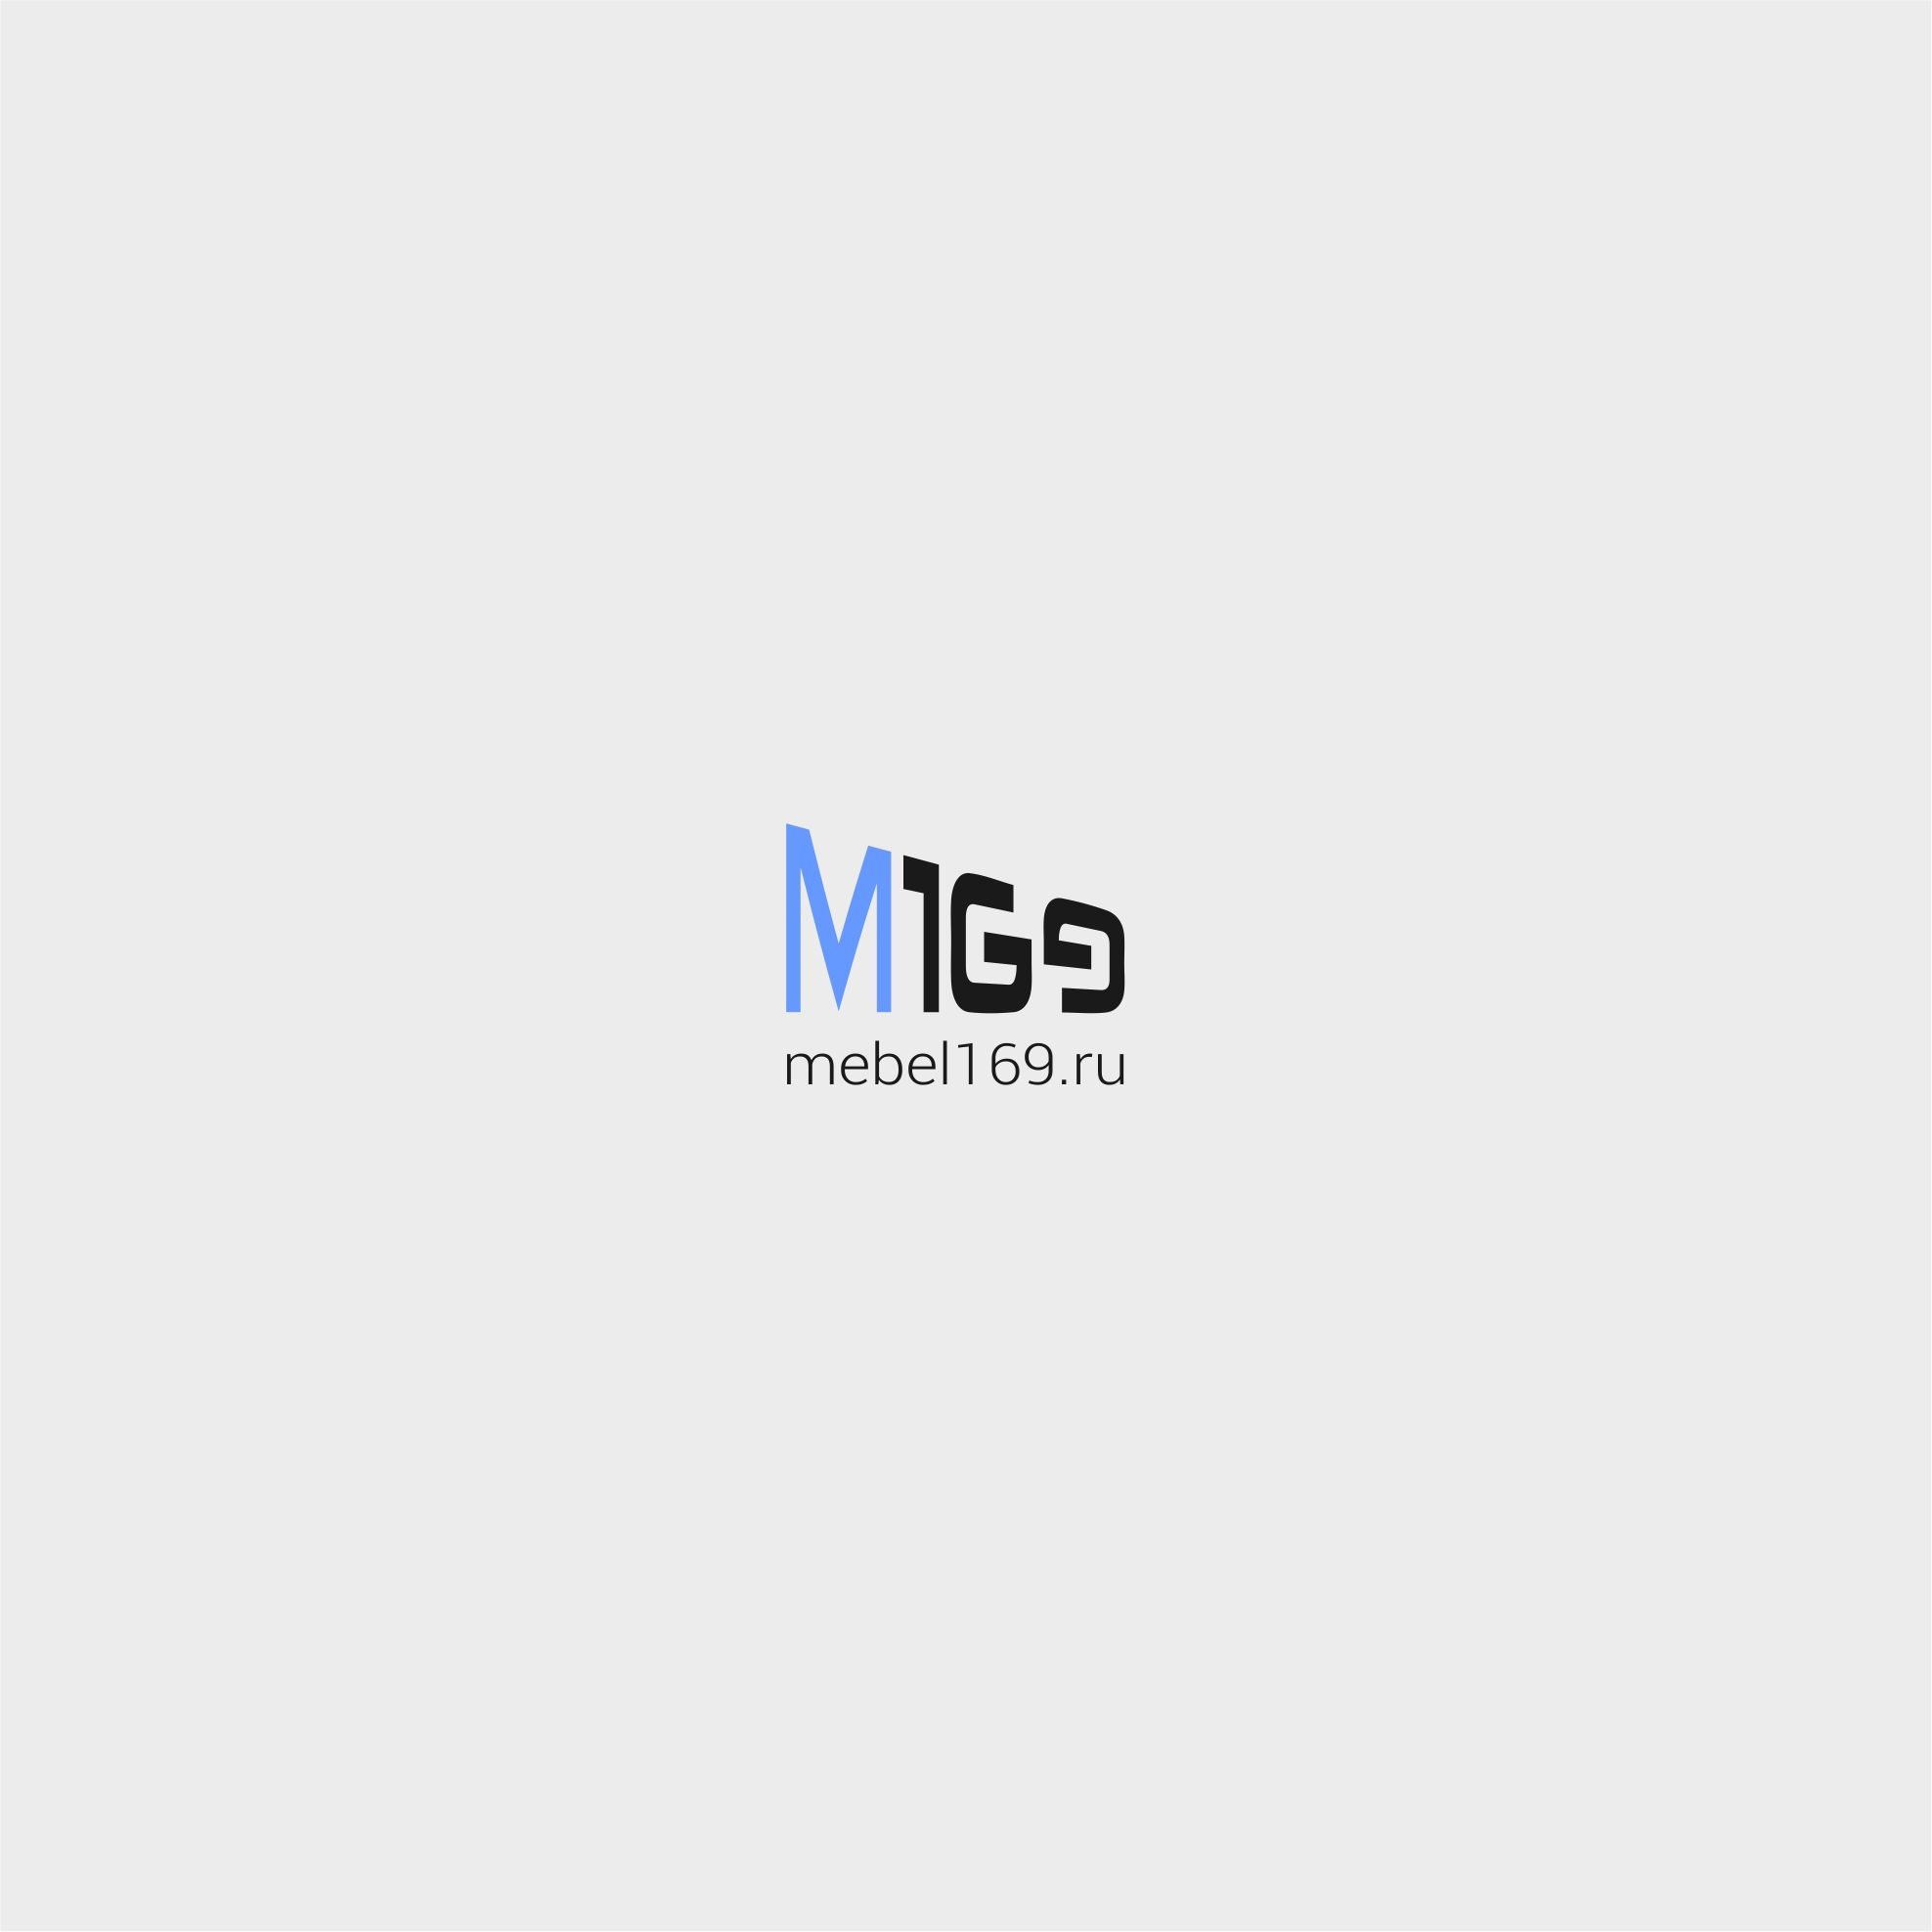 Логотип для Mebel169.ru - дизайнер AnatoliyInvito